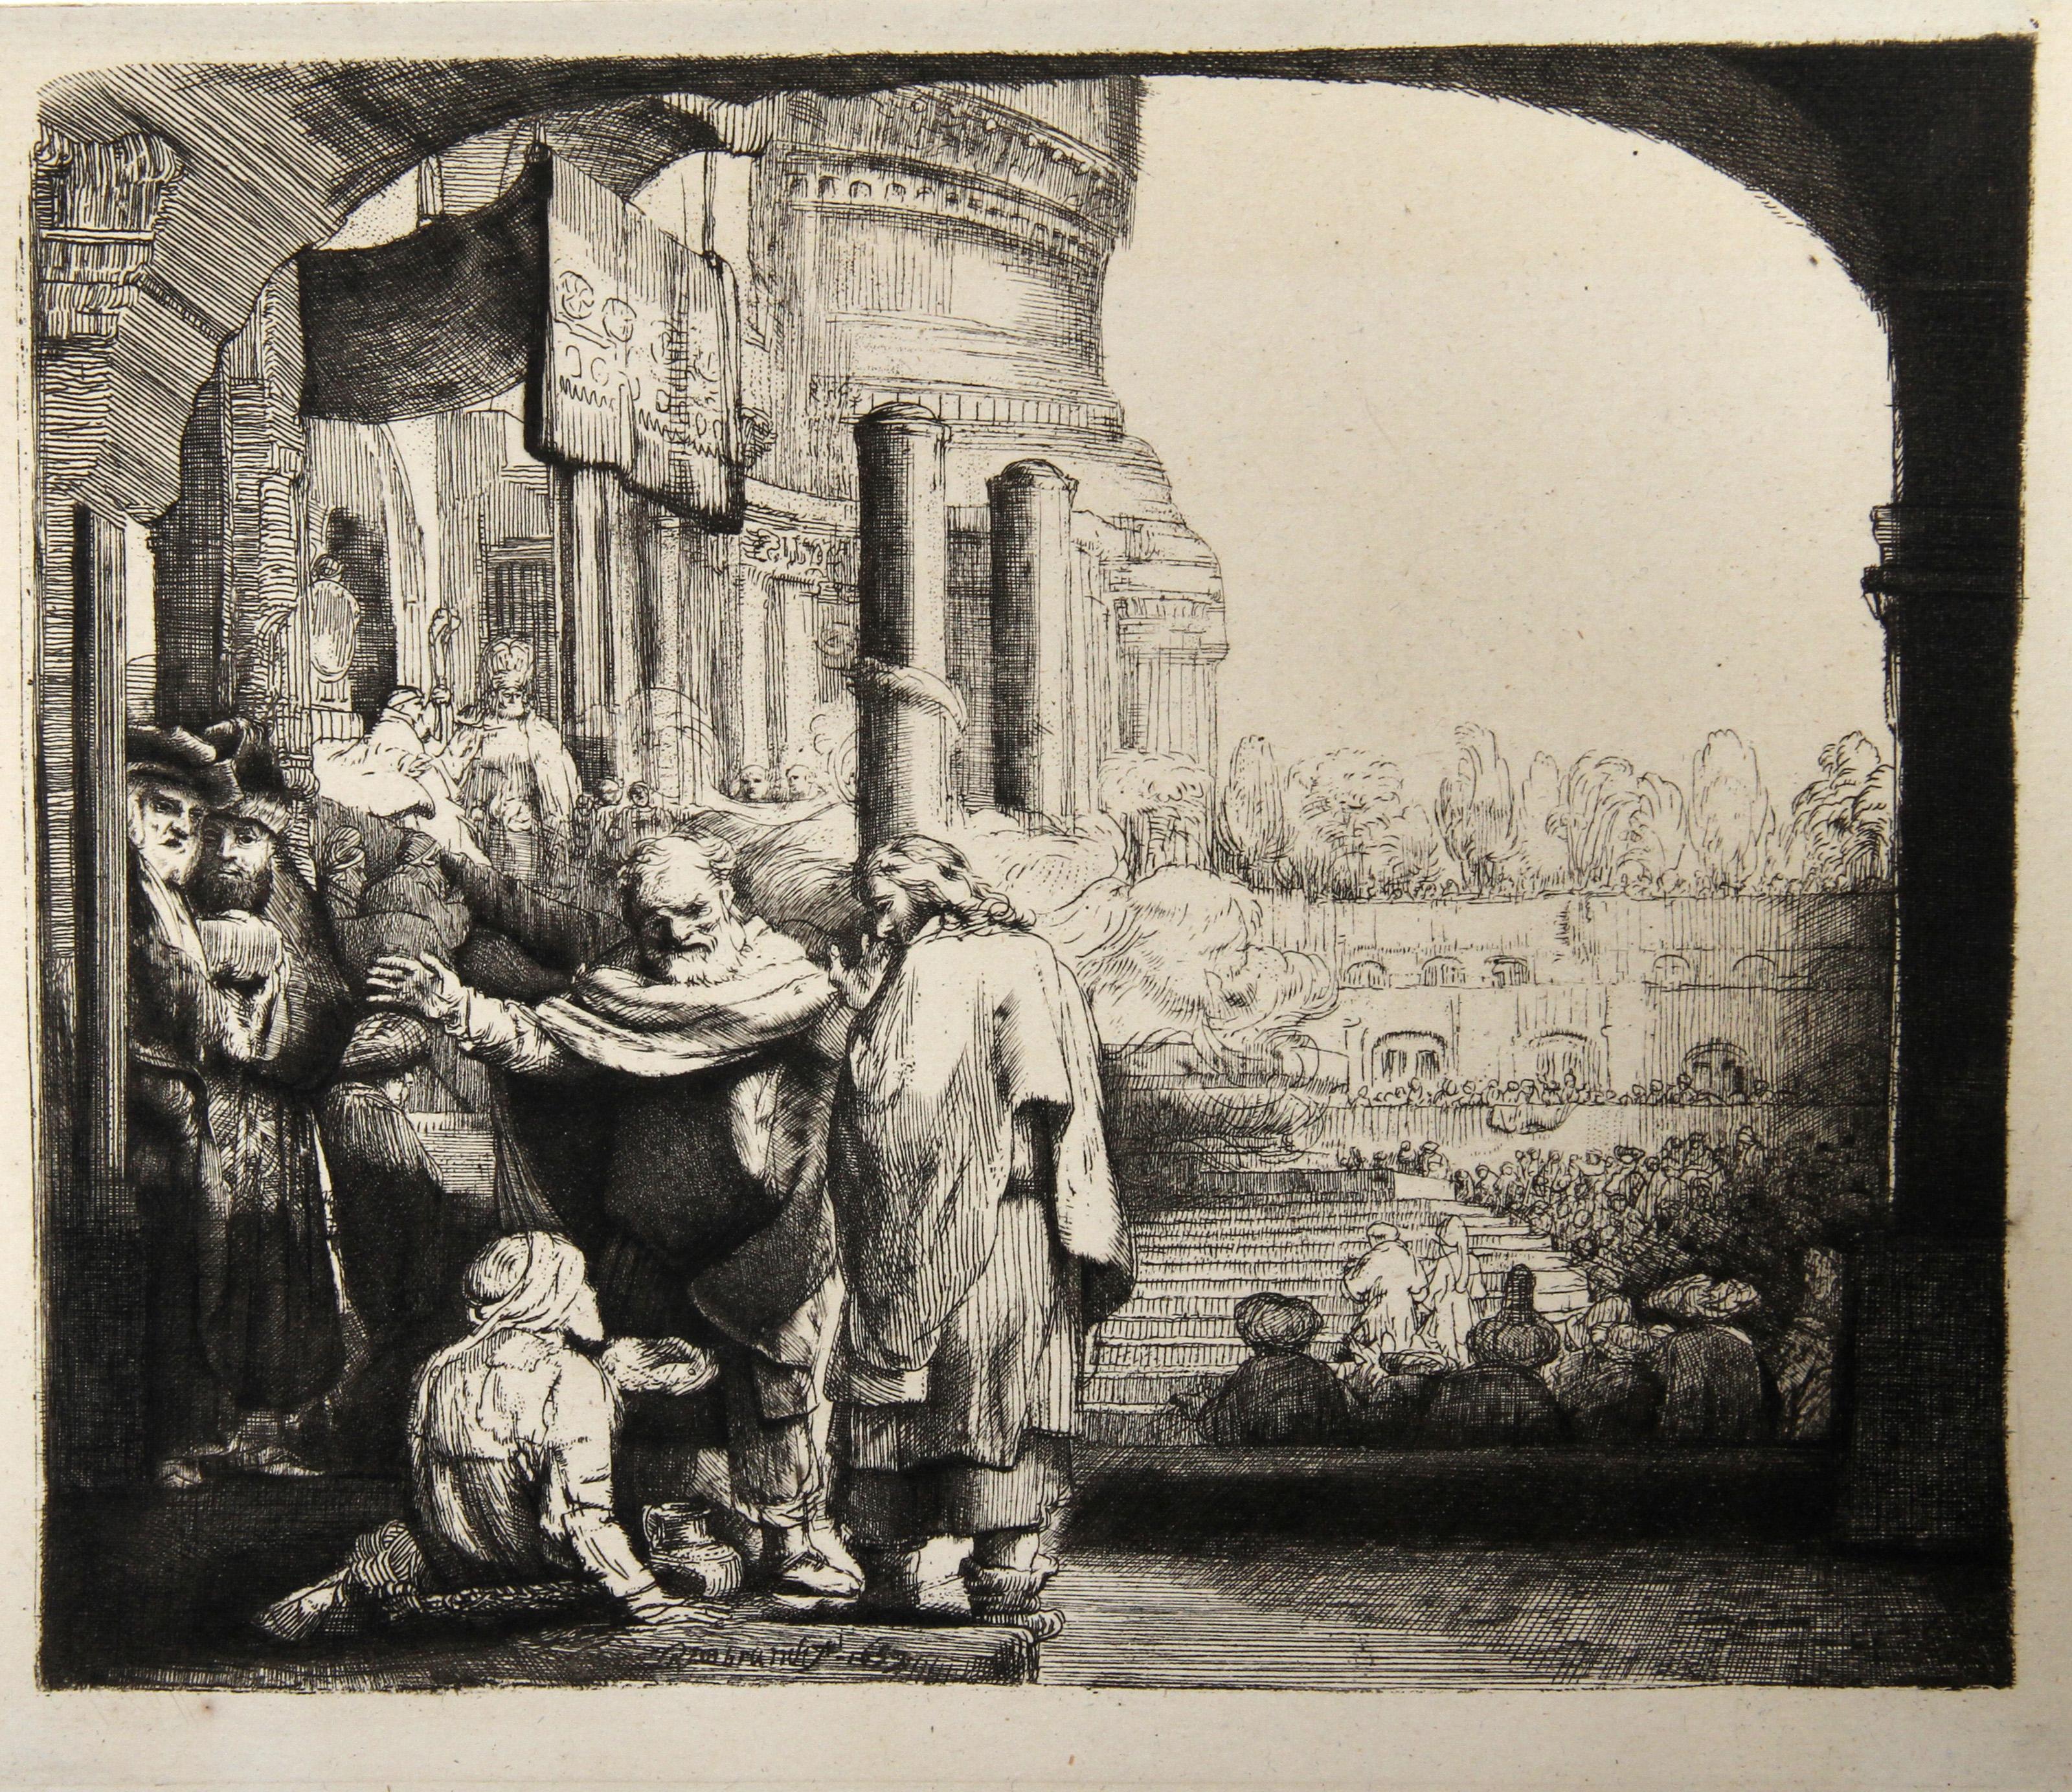 Rembrandt van Rijn, After by Amand Durand, Dutch (1606 - 1669) -  Saint Pierre Guerissant le Paralylique (B94). Year: 1878 (of original 1659), Medium: Heliogravure, Size: 7.25  x 8.5 in. (18.42  x 21.59 cm), Printer: Amand Durand, Description: